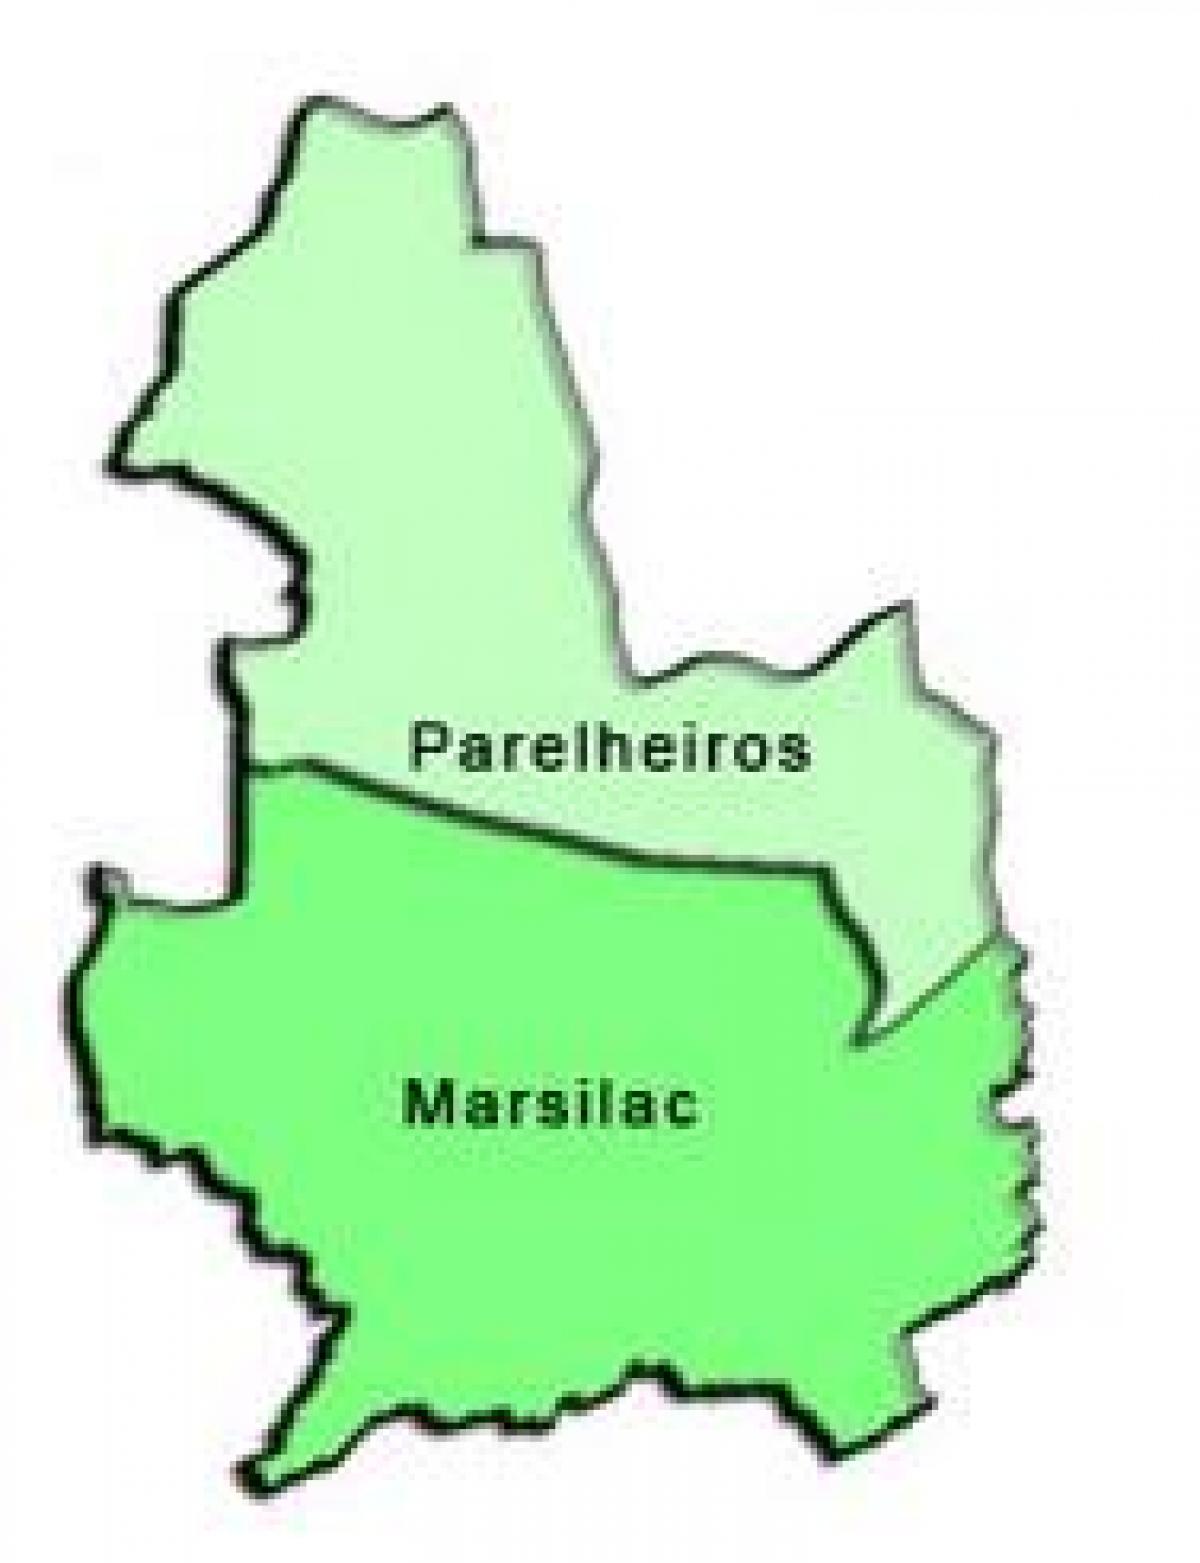 Peta Parelheiros sub-prefecture